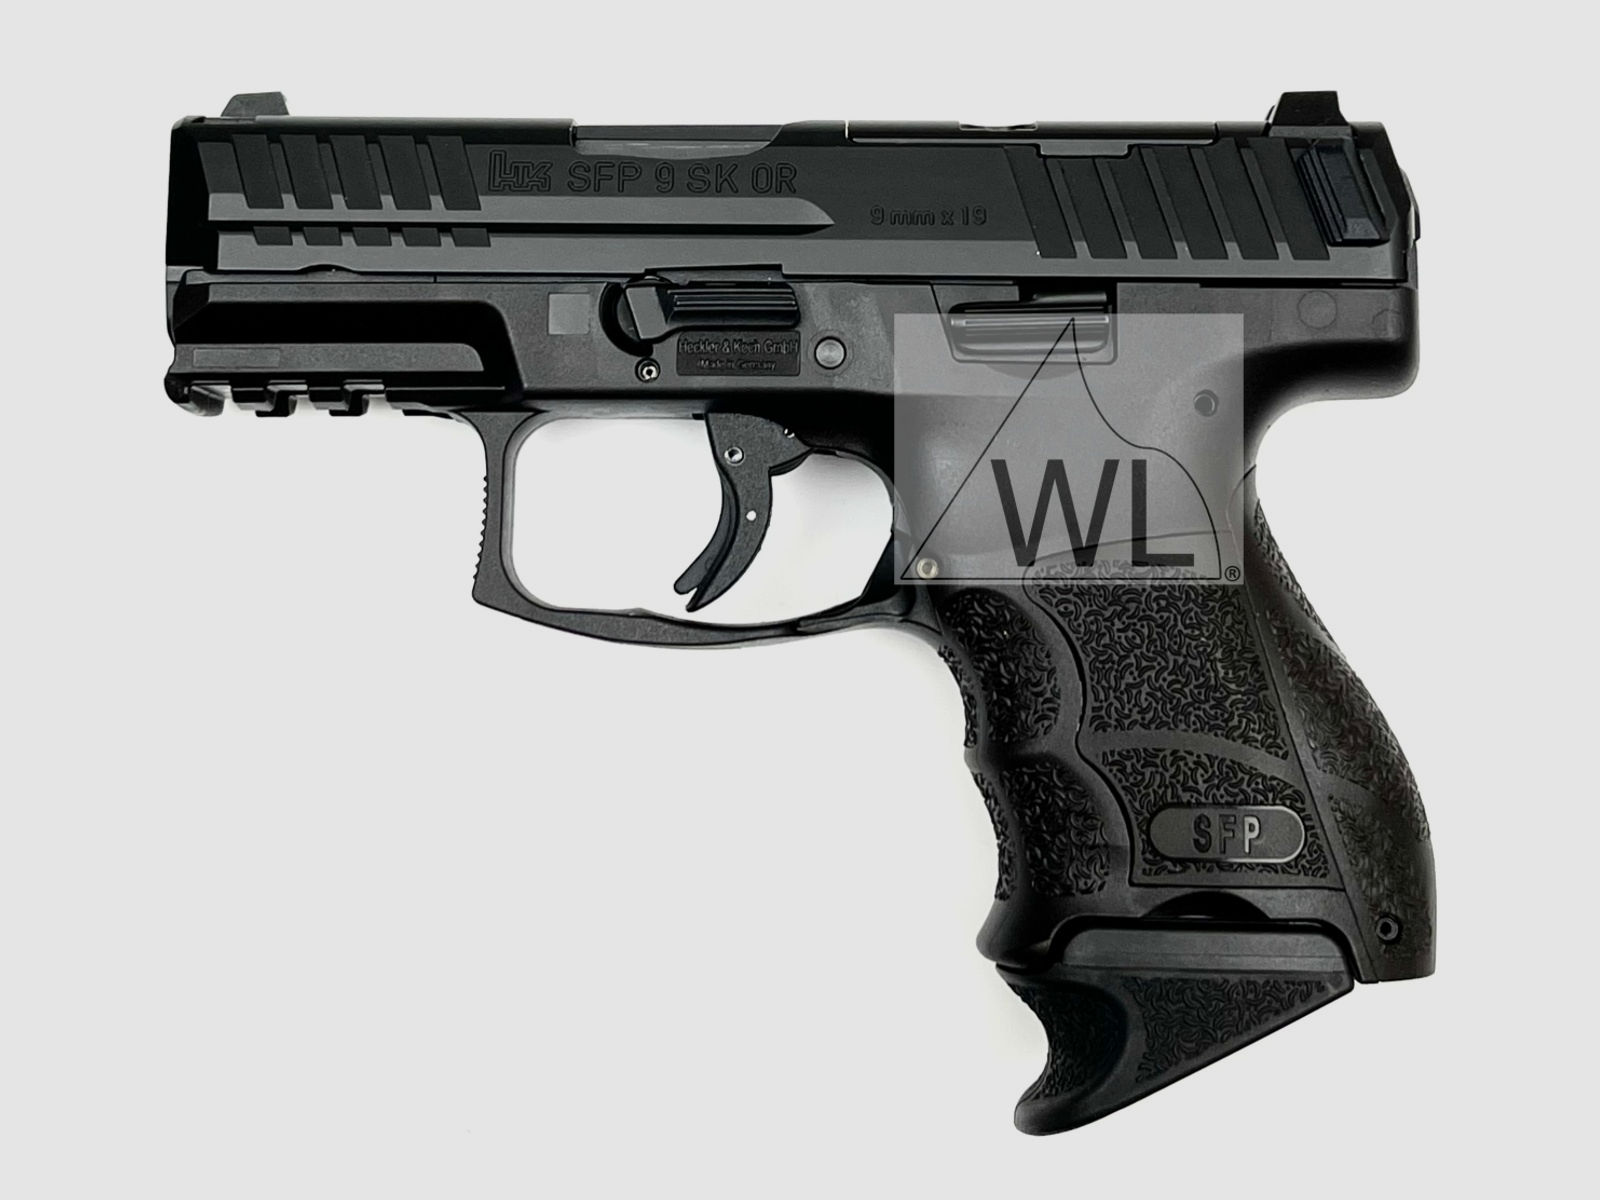 Heckler & Koch SFP9SK-Optical Ready, 9mm Luger